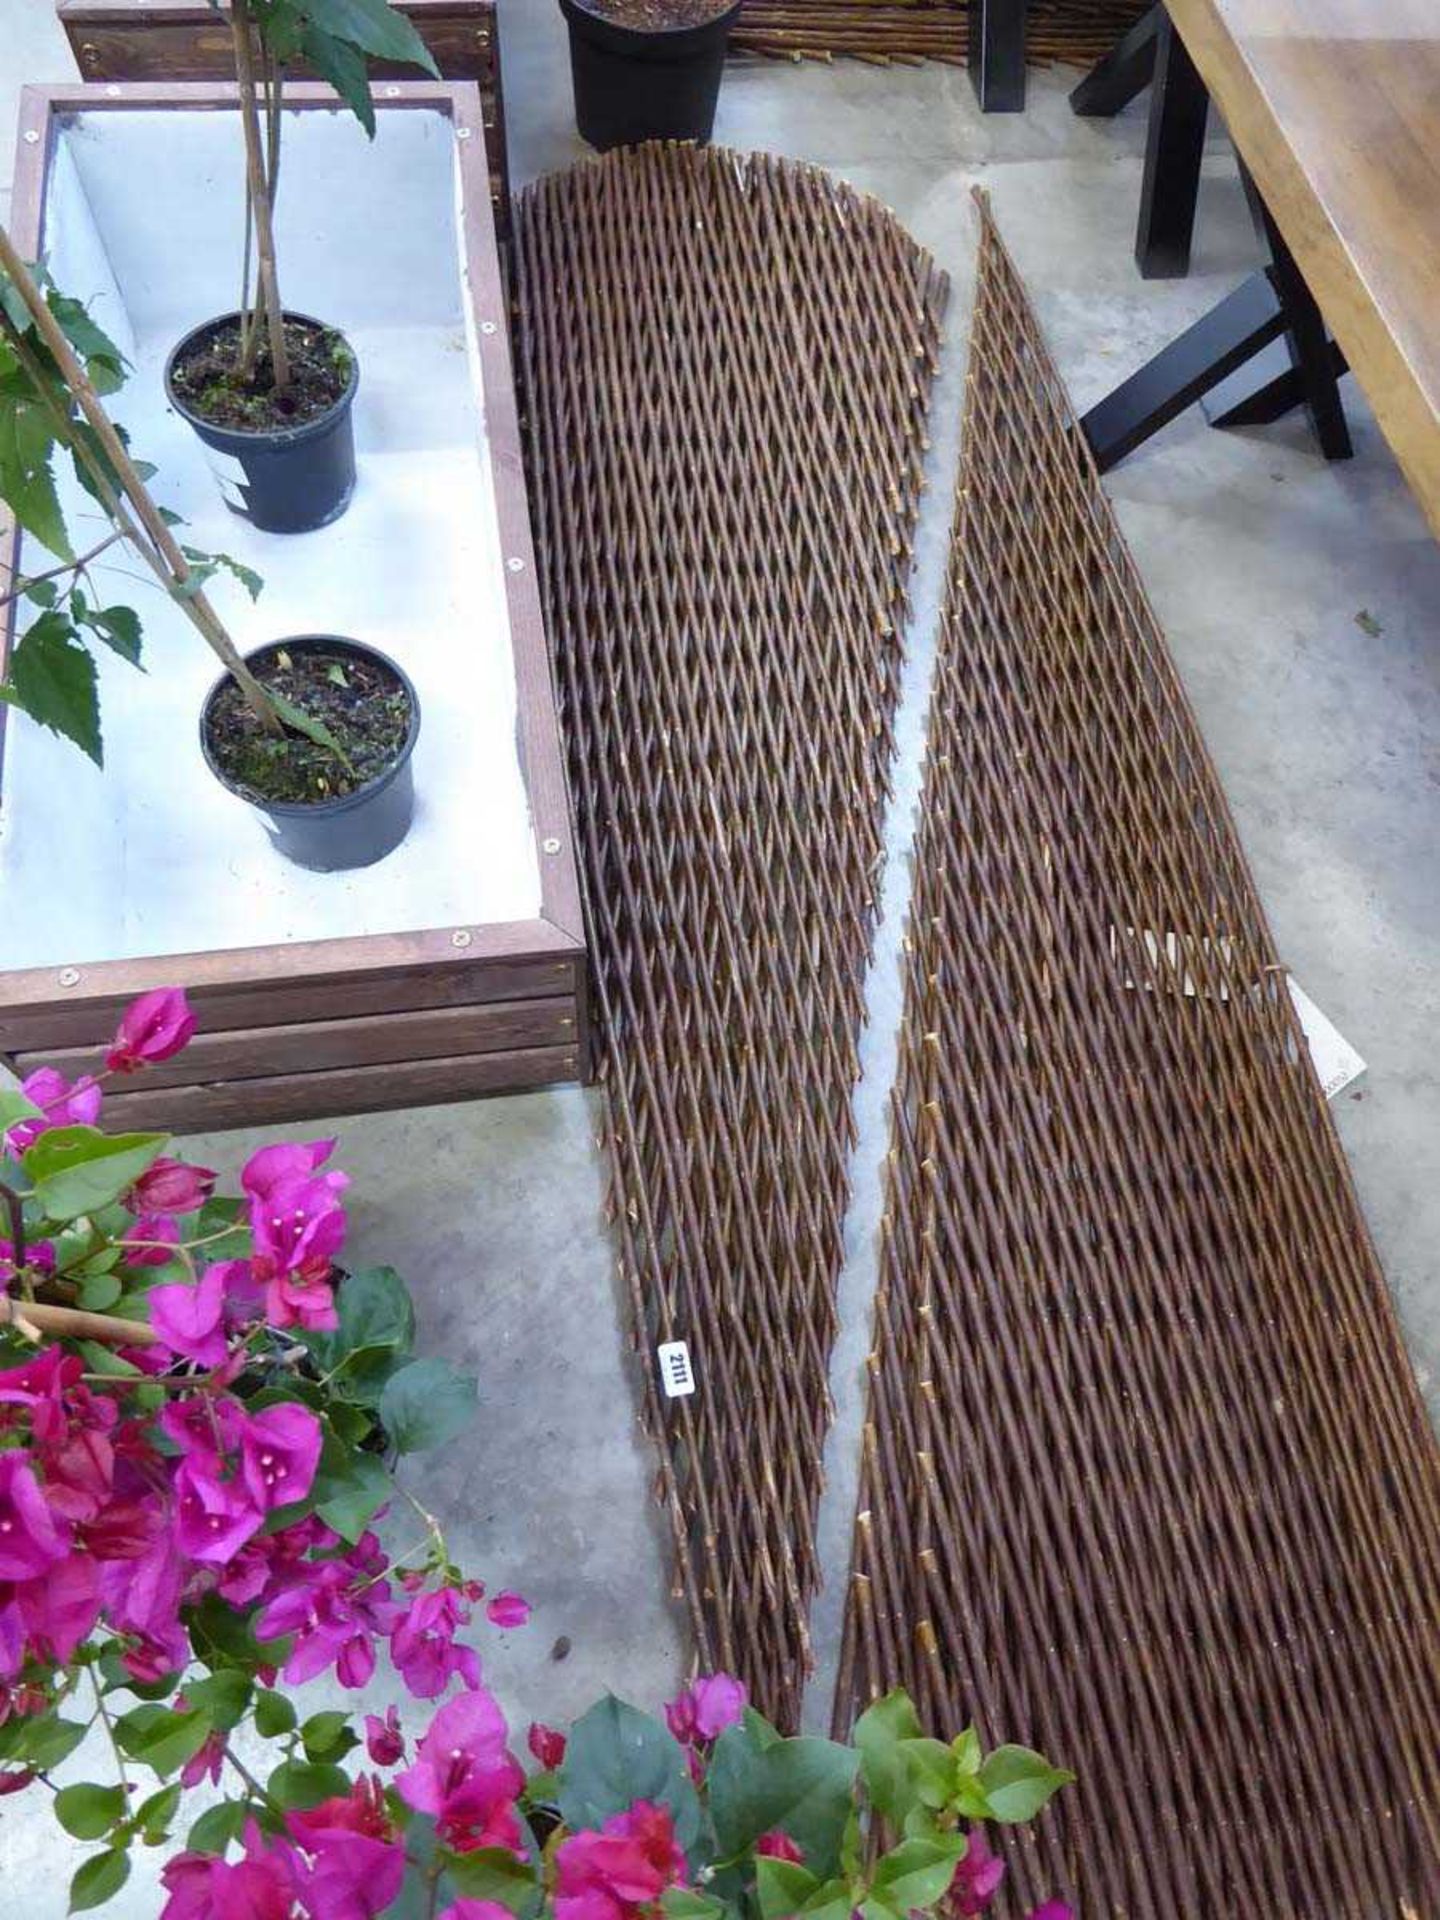 Pair of 180cm x 90cm expanding willow fan trellis panels